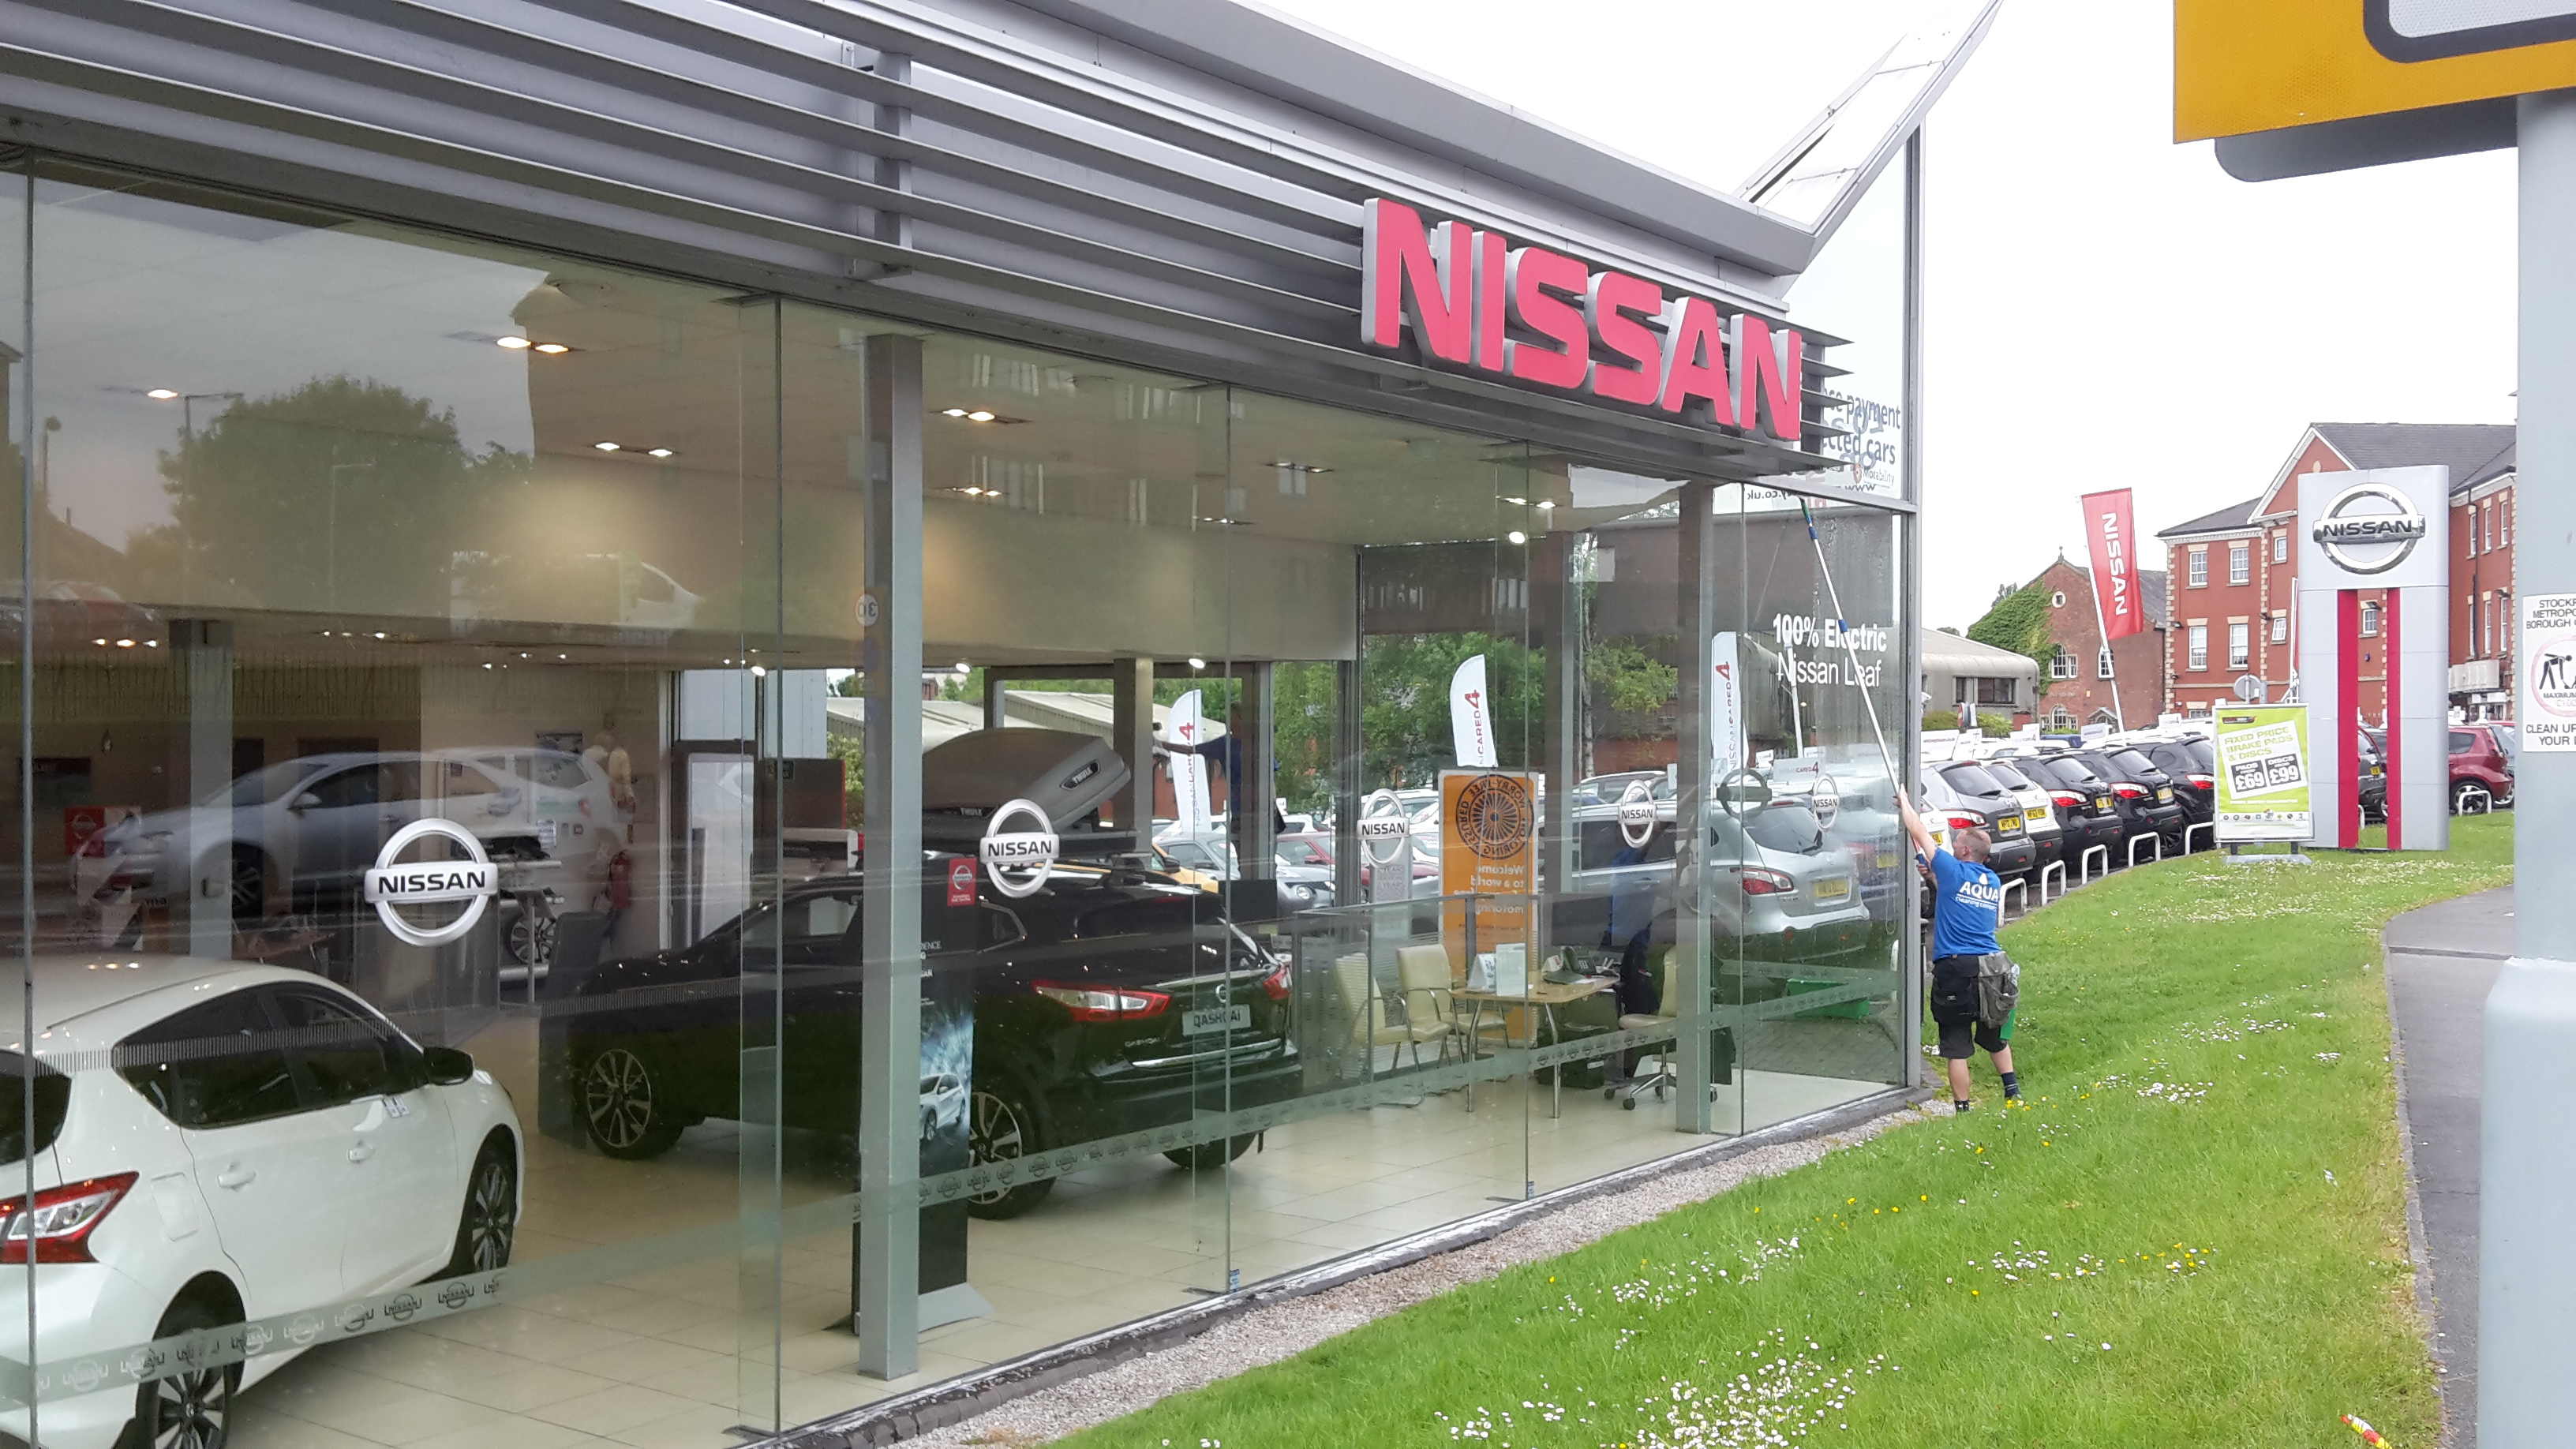 Nissan Garage Windows